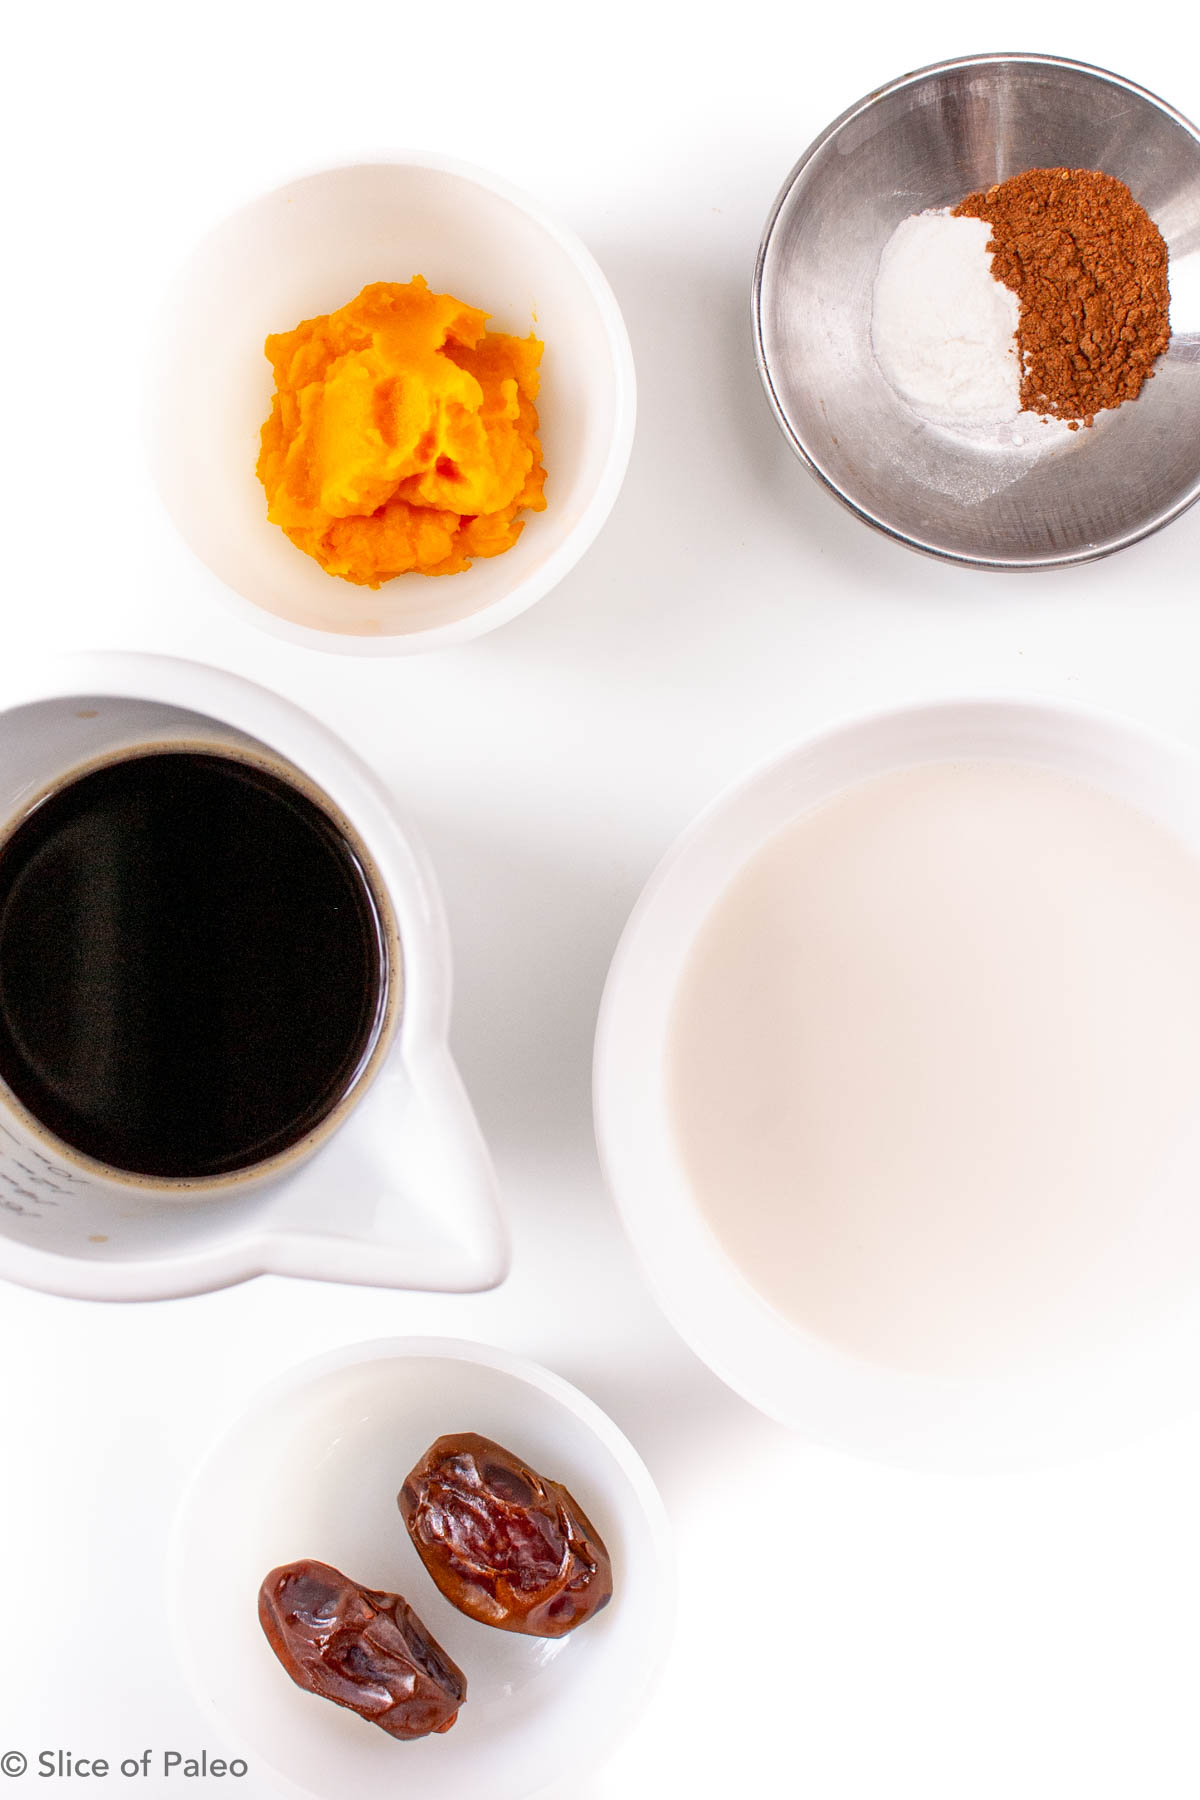 Paleo pumpkin spice latte ingredients